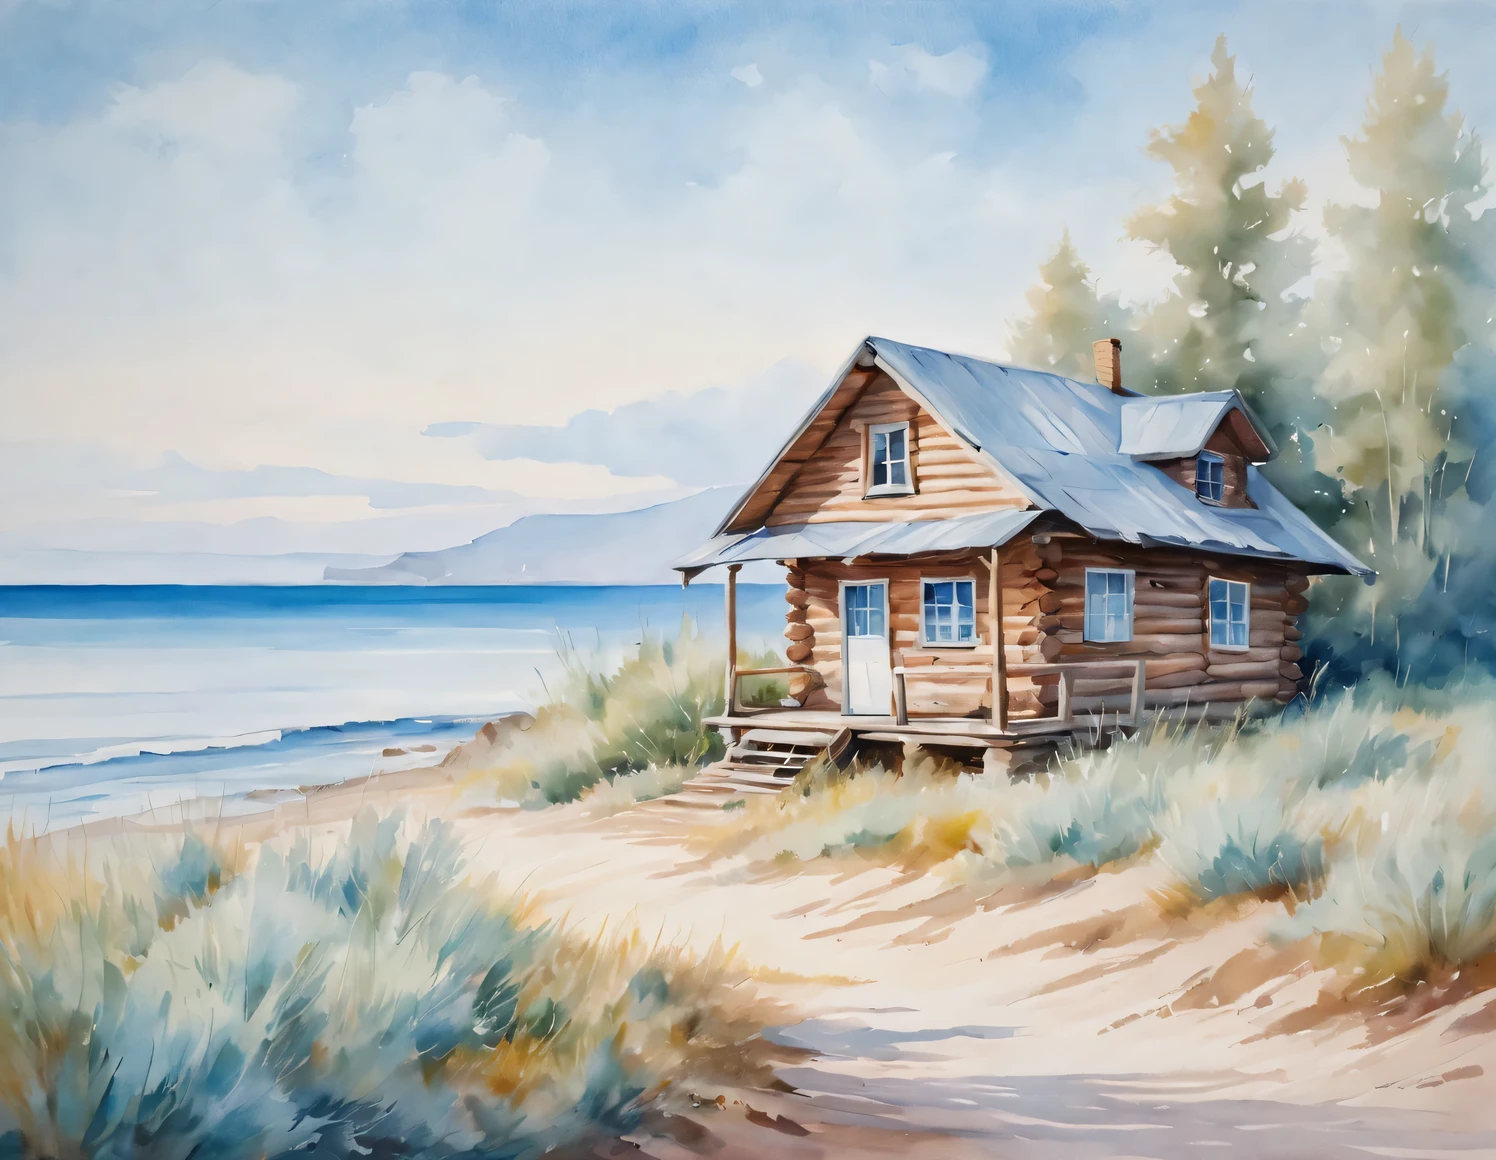 油畫藝術, watercolor painting in 柔和的色調, 海邊的小木屋, 藍天, 柔和的色調, 布面油畫